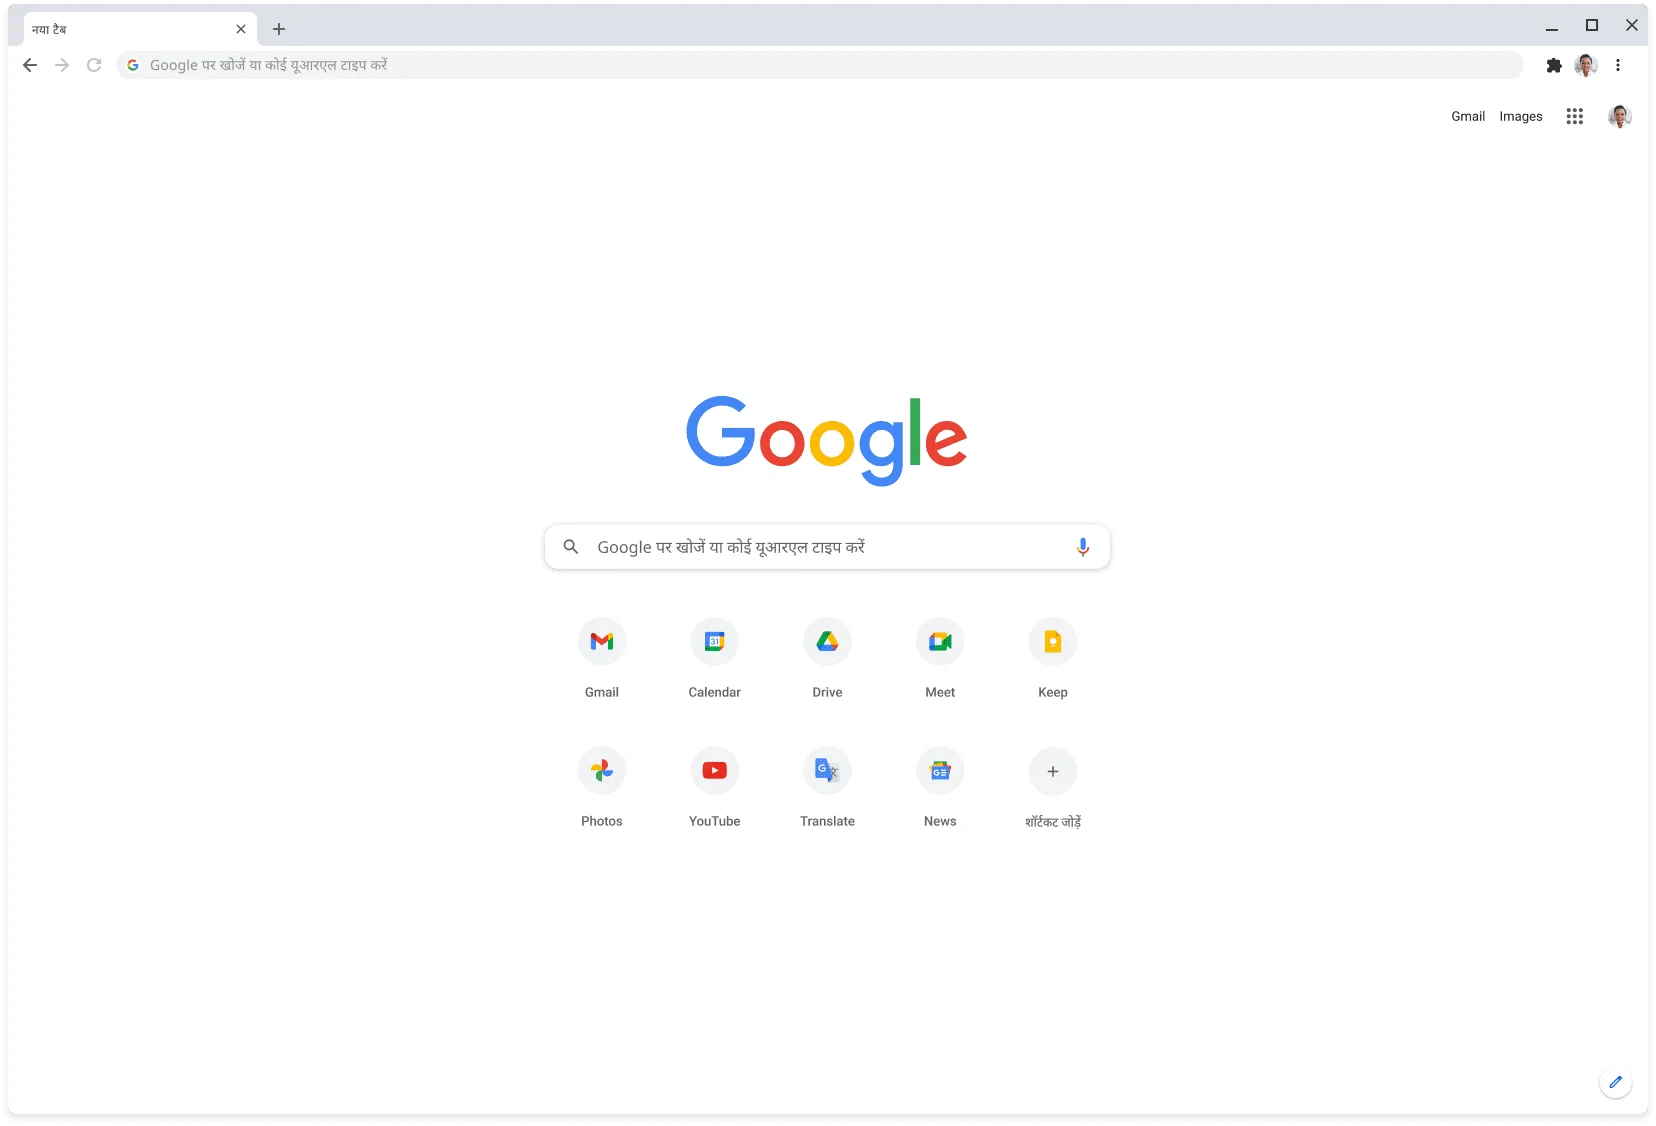 Chrome ब्राउज़र की विंडो, जिस पर Google.com साइट दिख रही है.